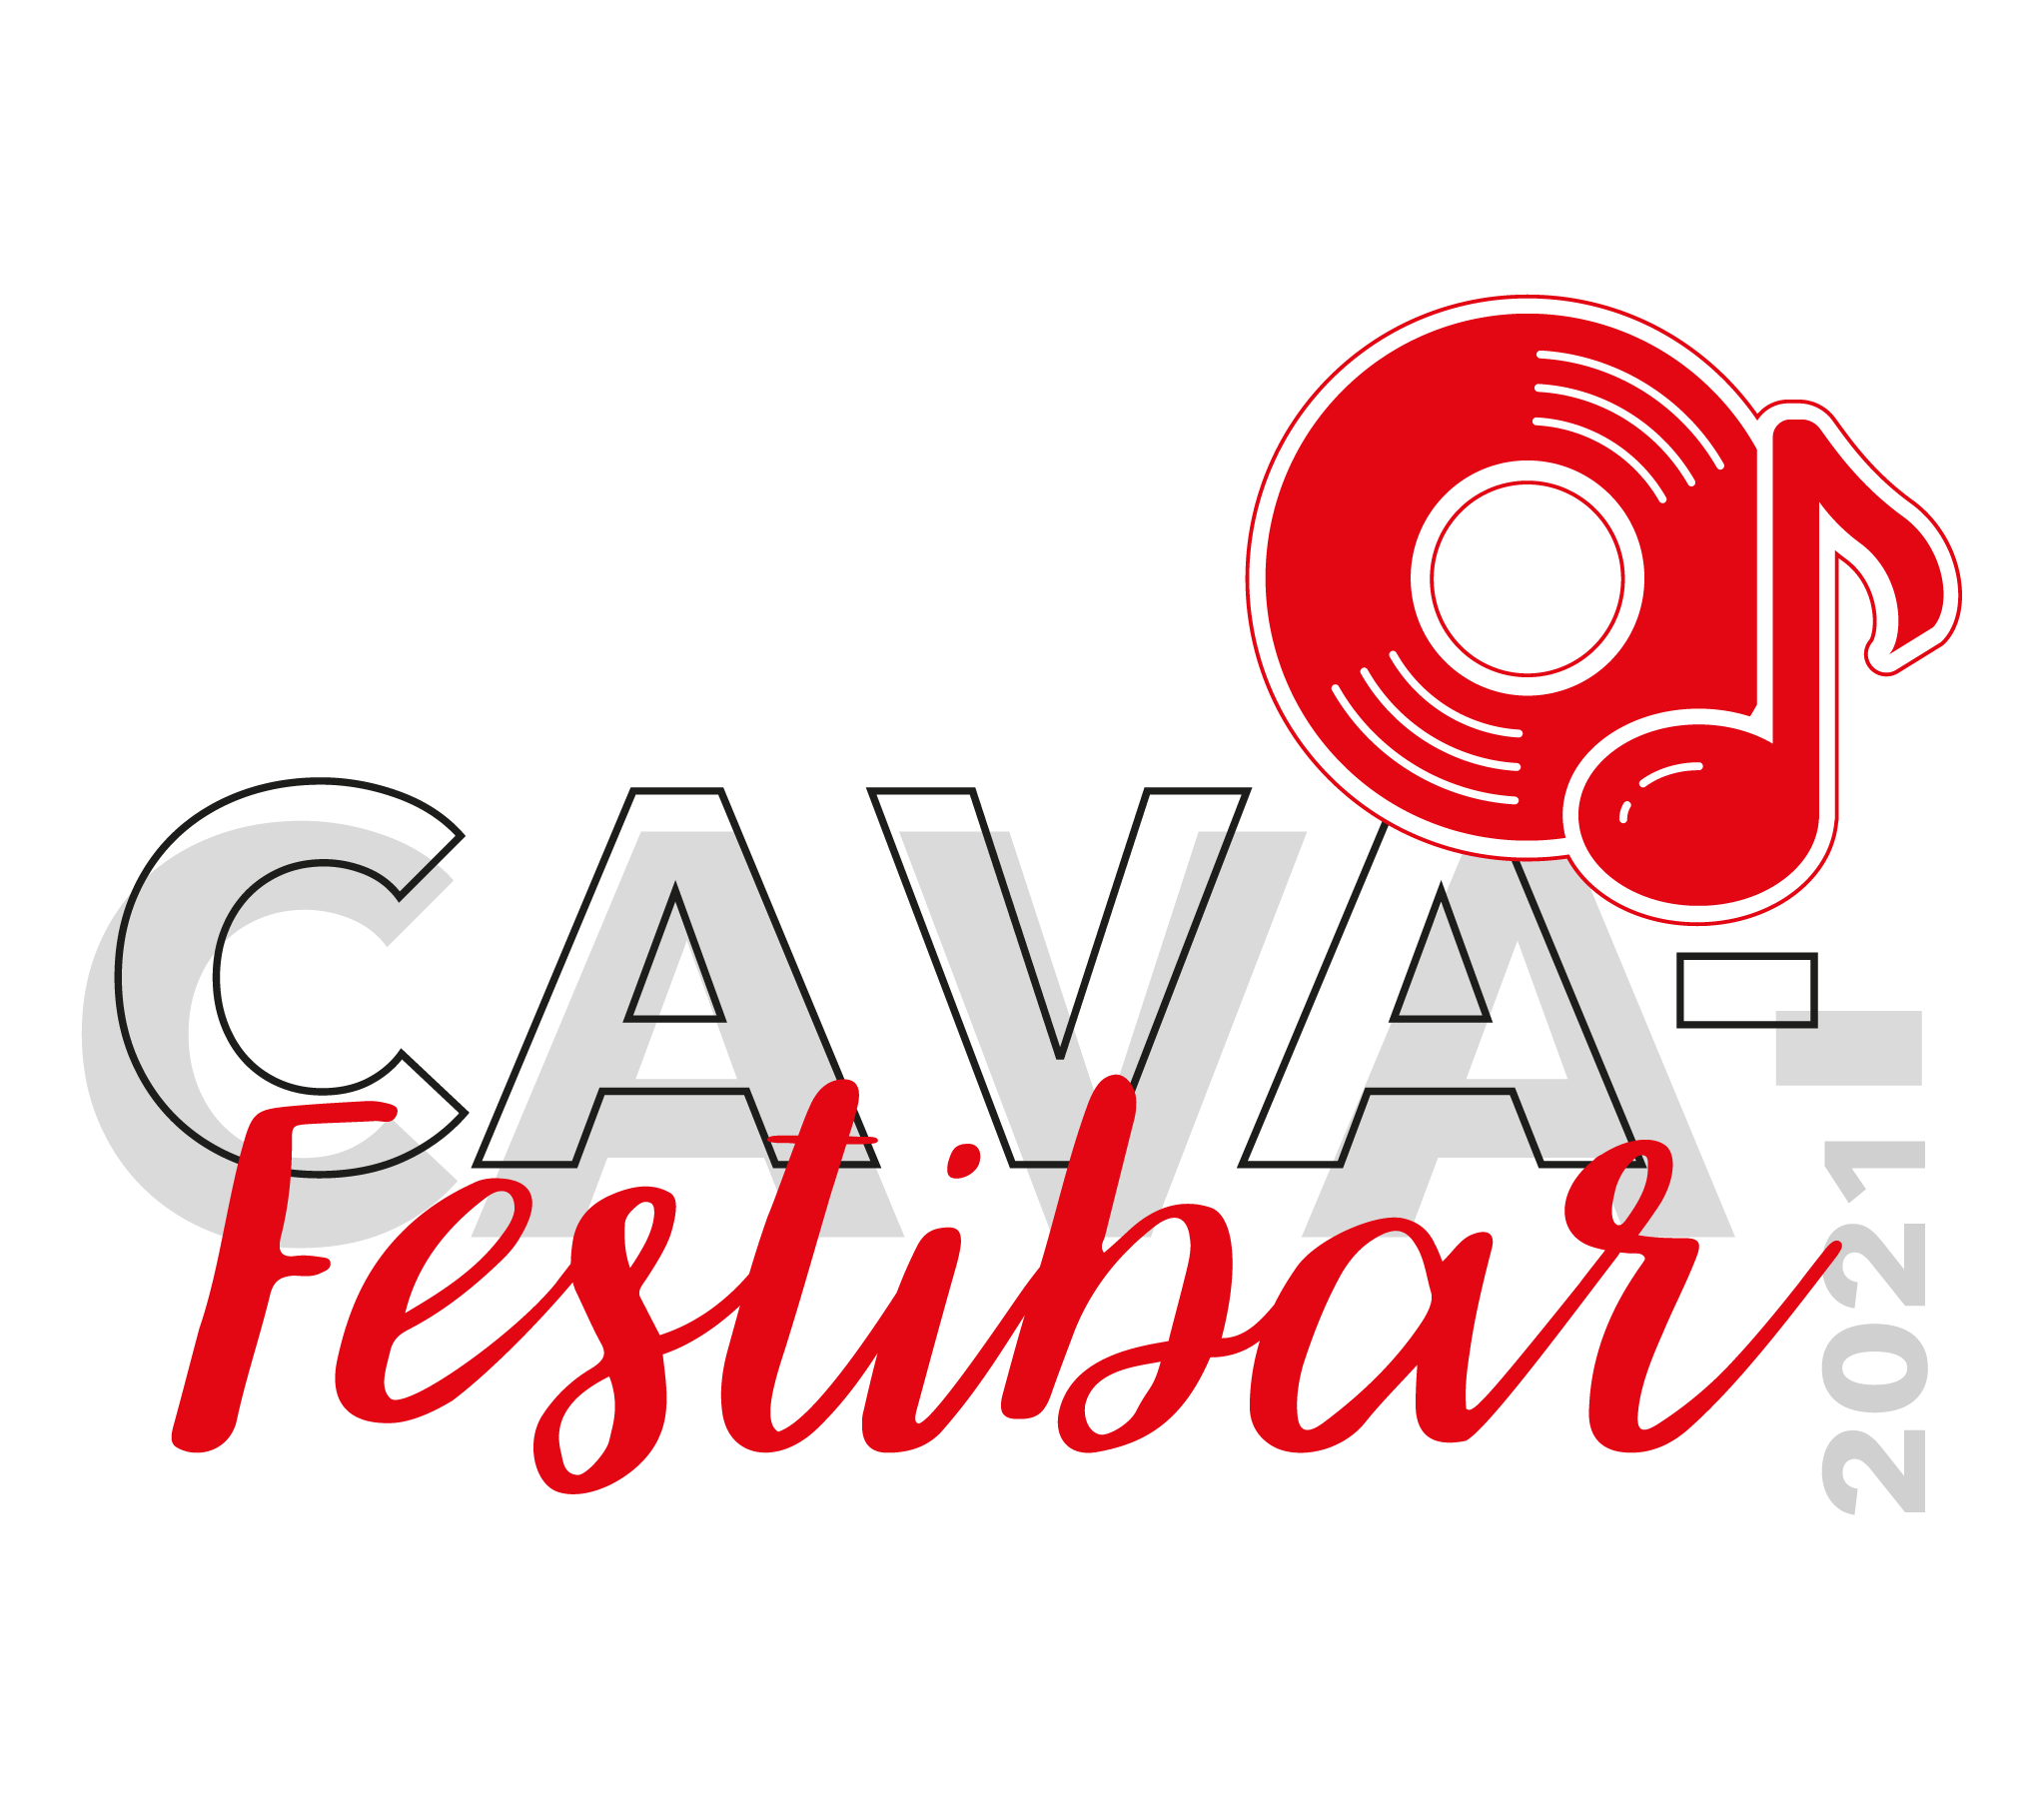 Logo-Cava-Festibar 2021